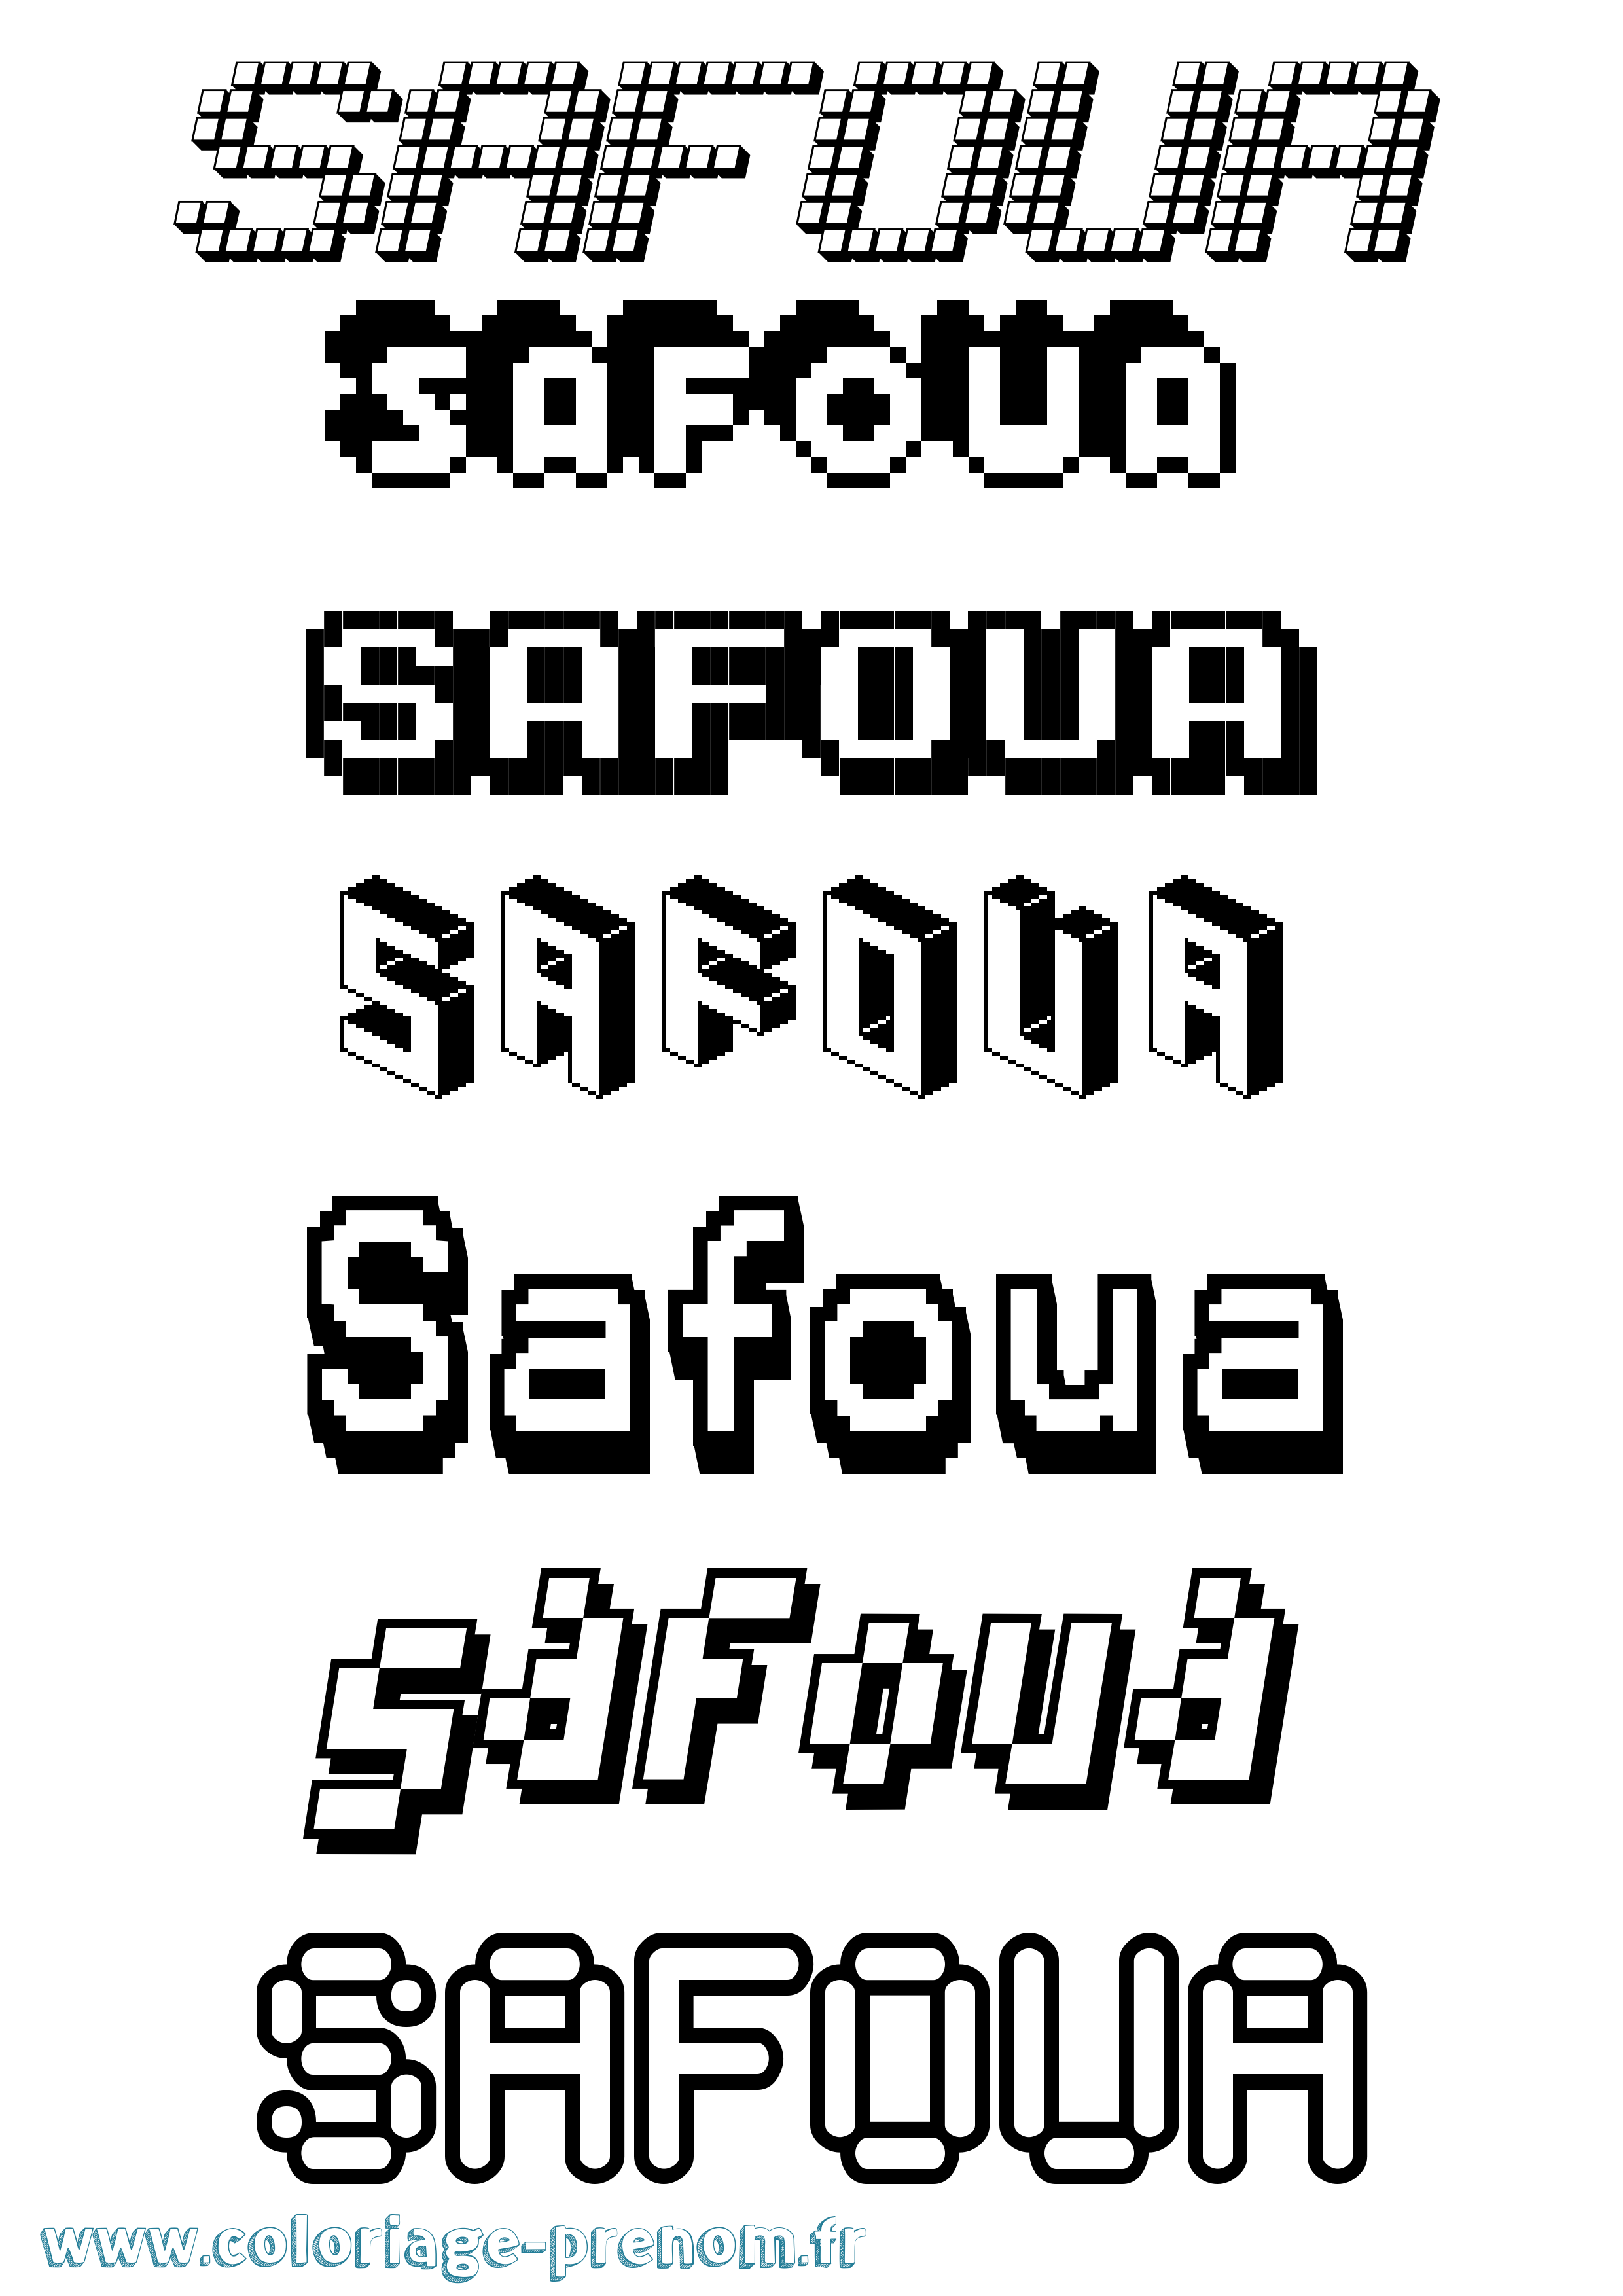 Coloriage prénom Safoua Pixel